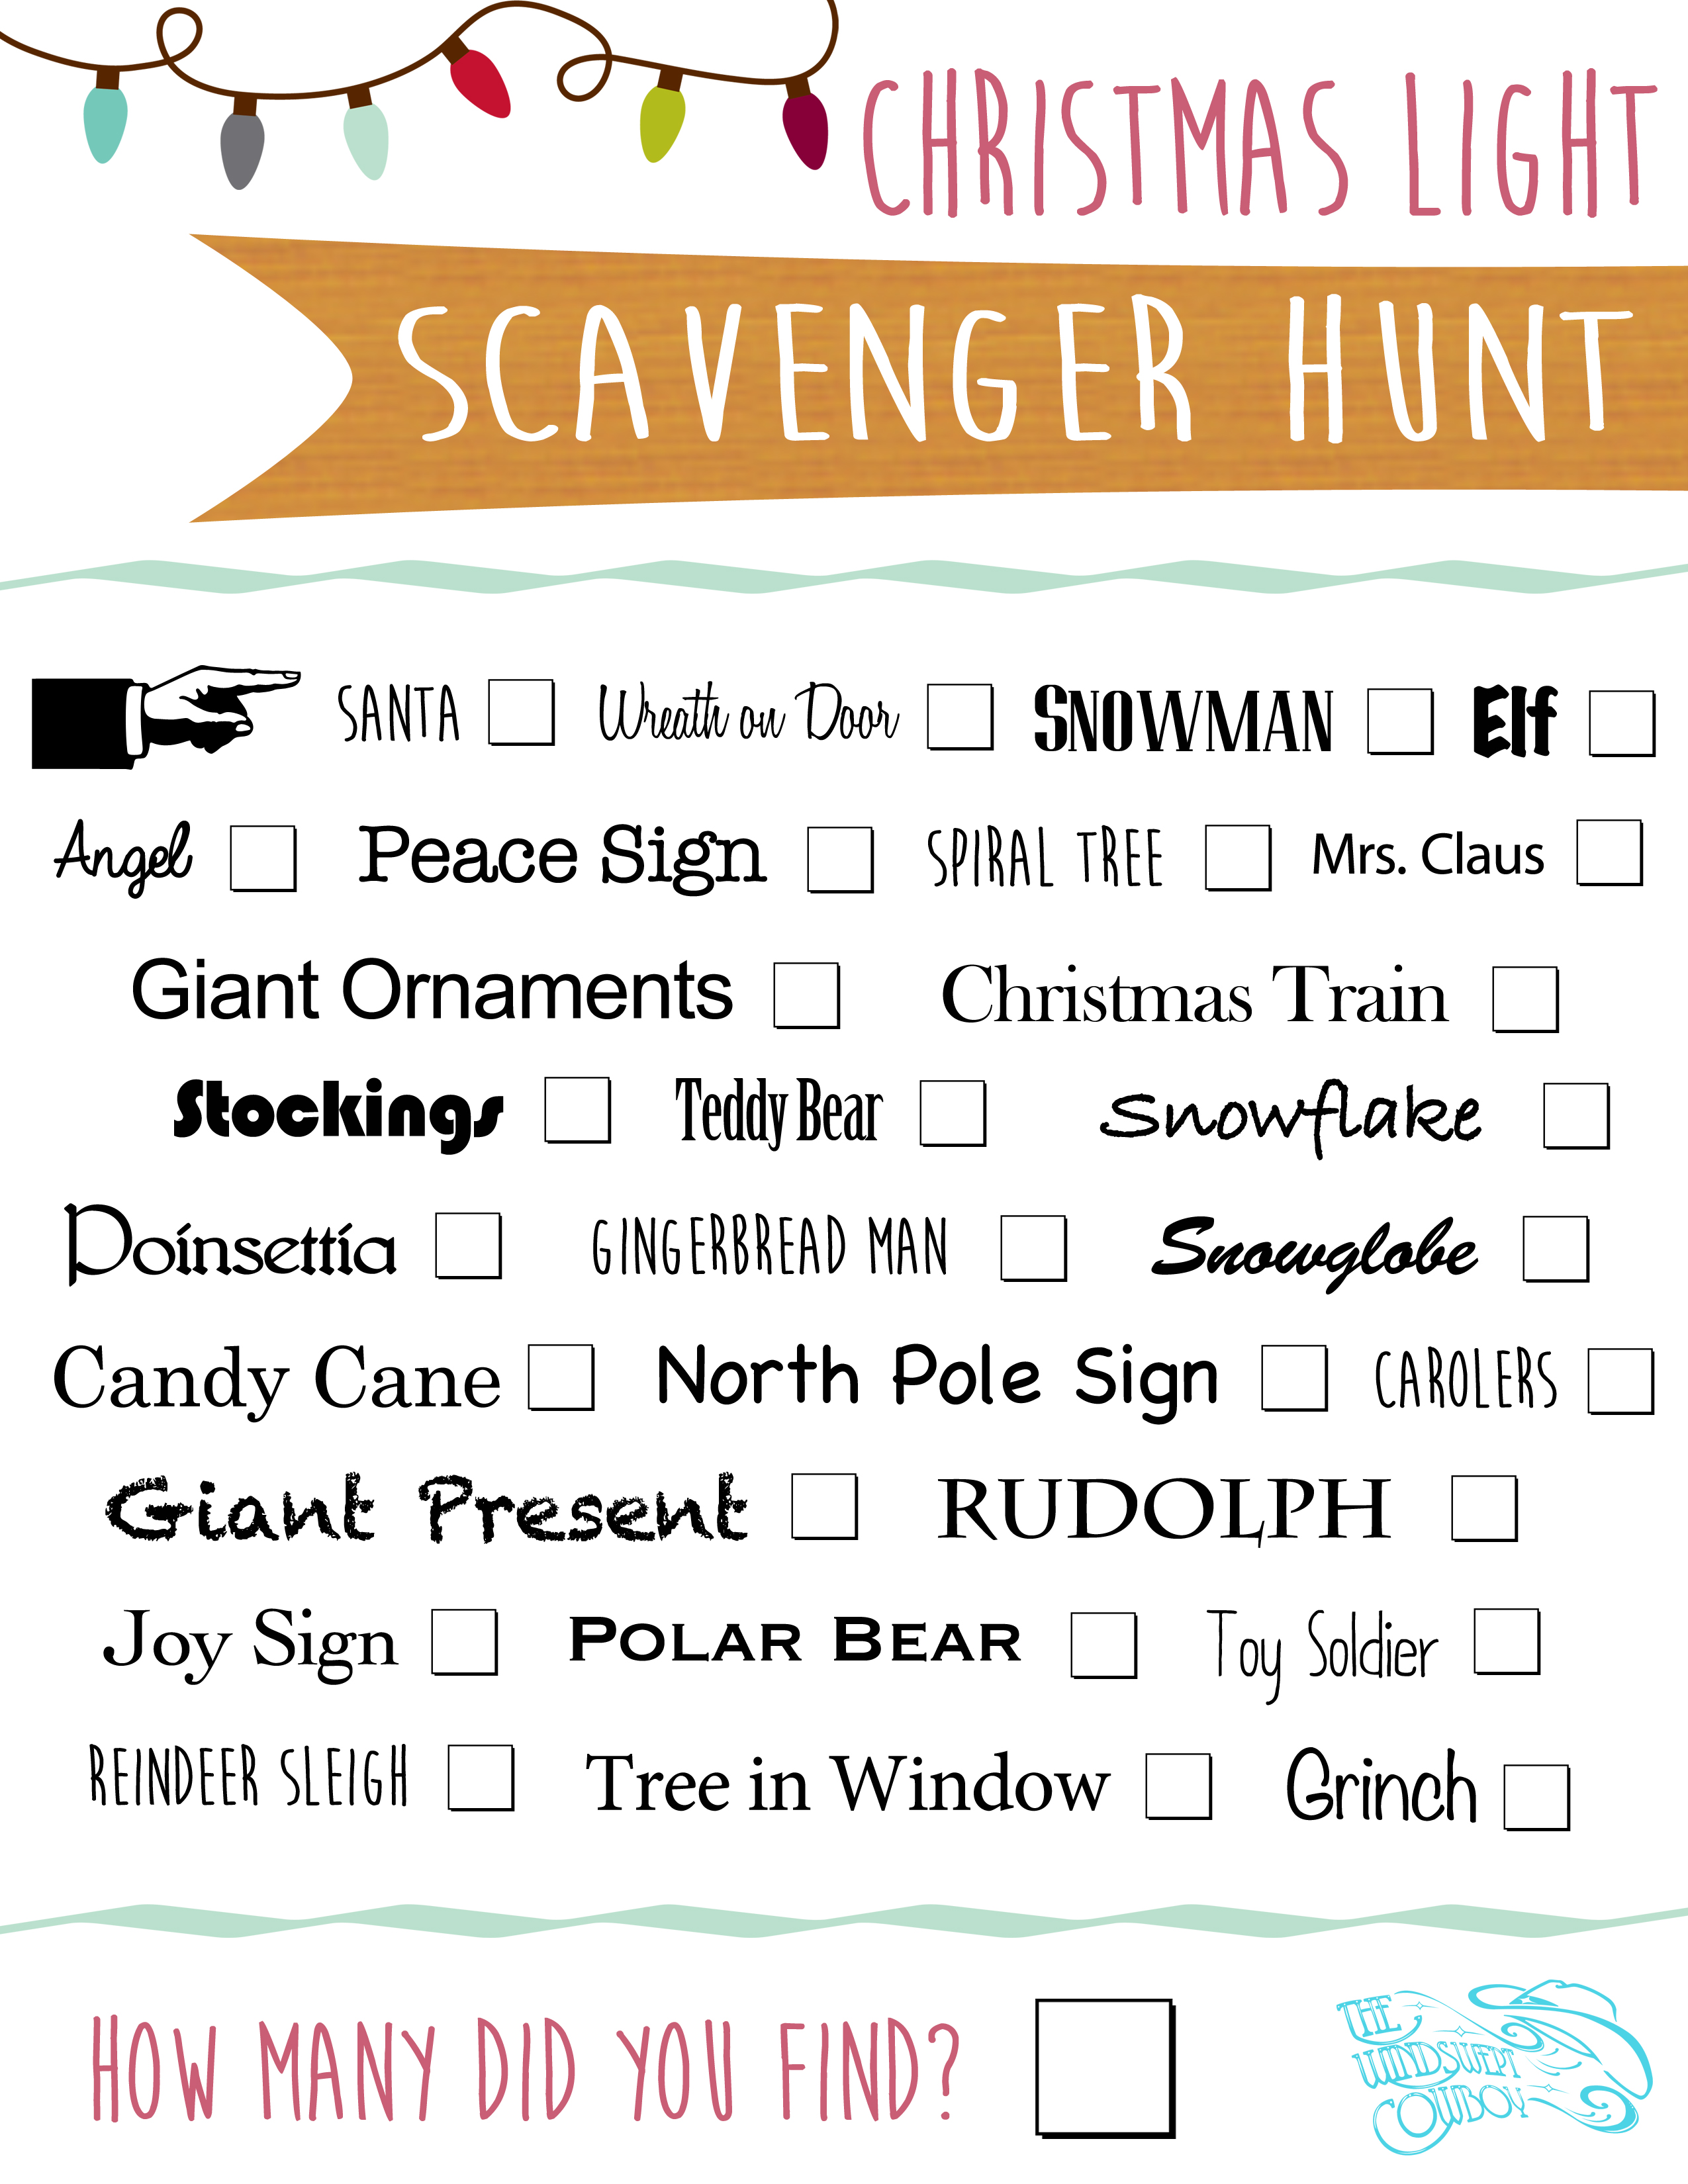 Christmas Scavenger Hunt Items